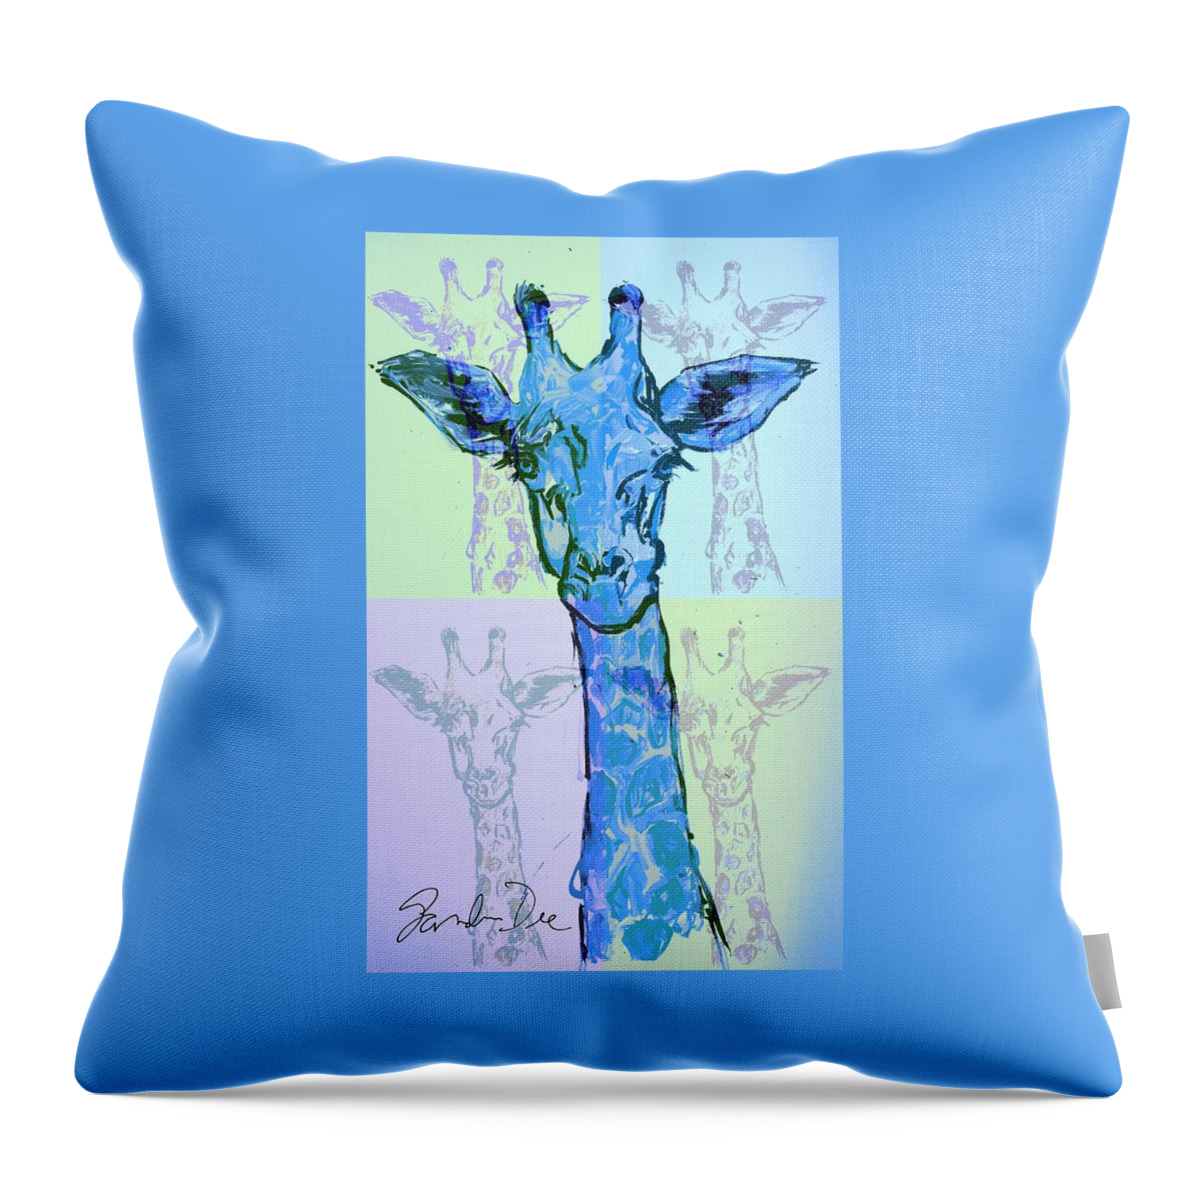 Giraffe Throw Pillow featuring the painting Esther's Blue Giraffe by Sandra Dee